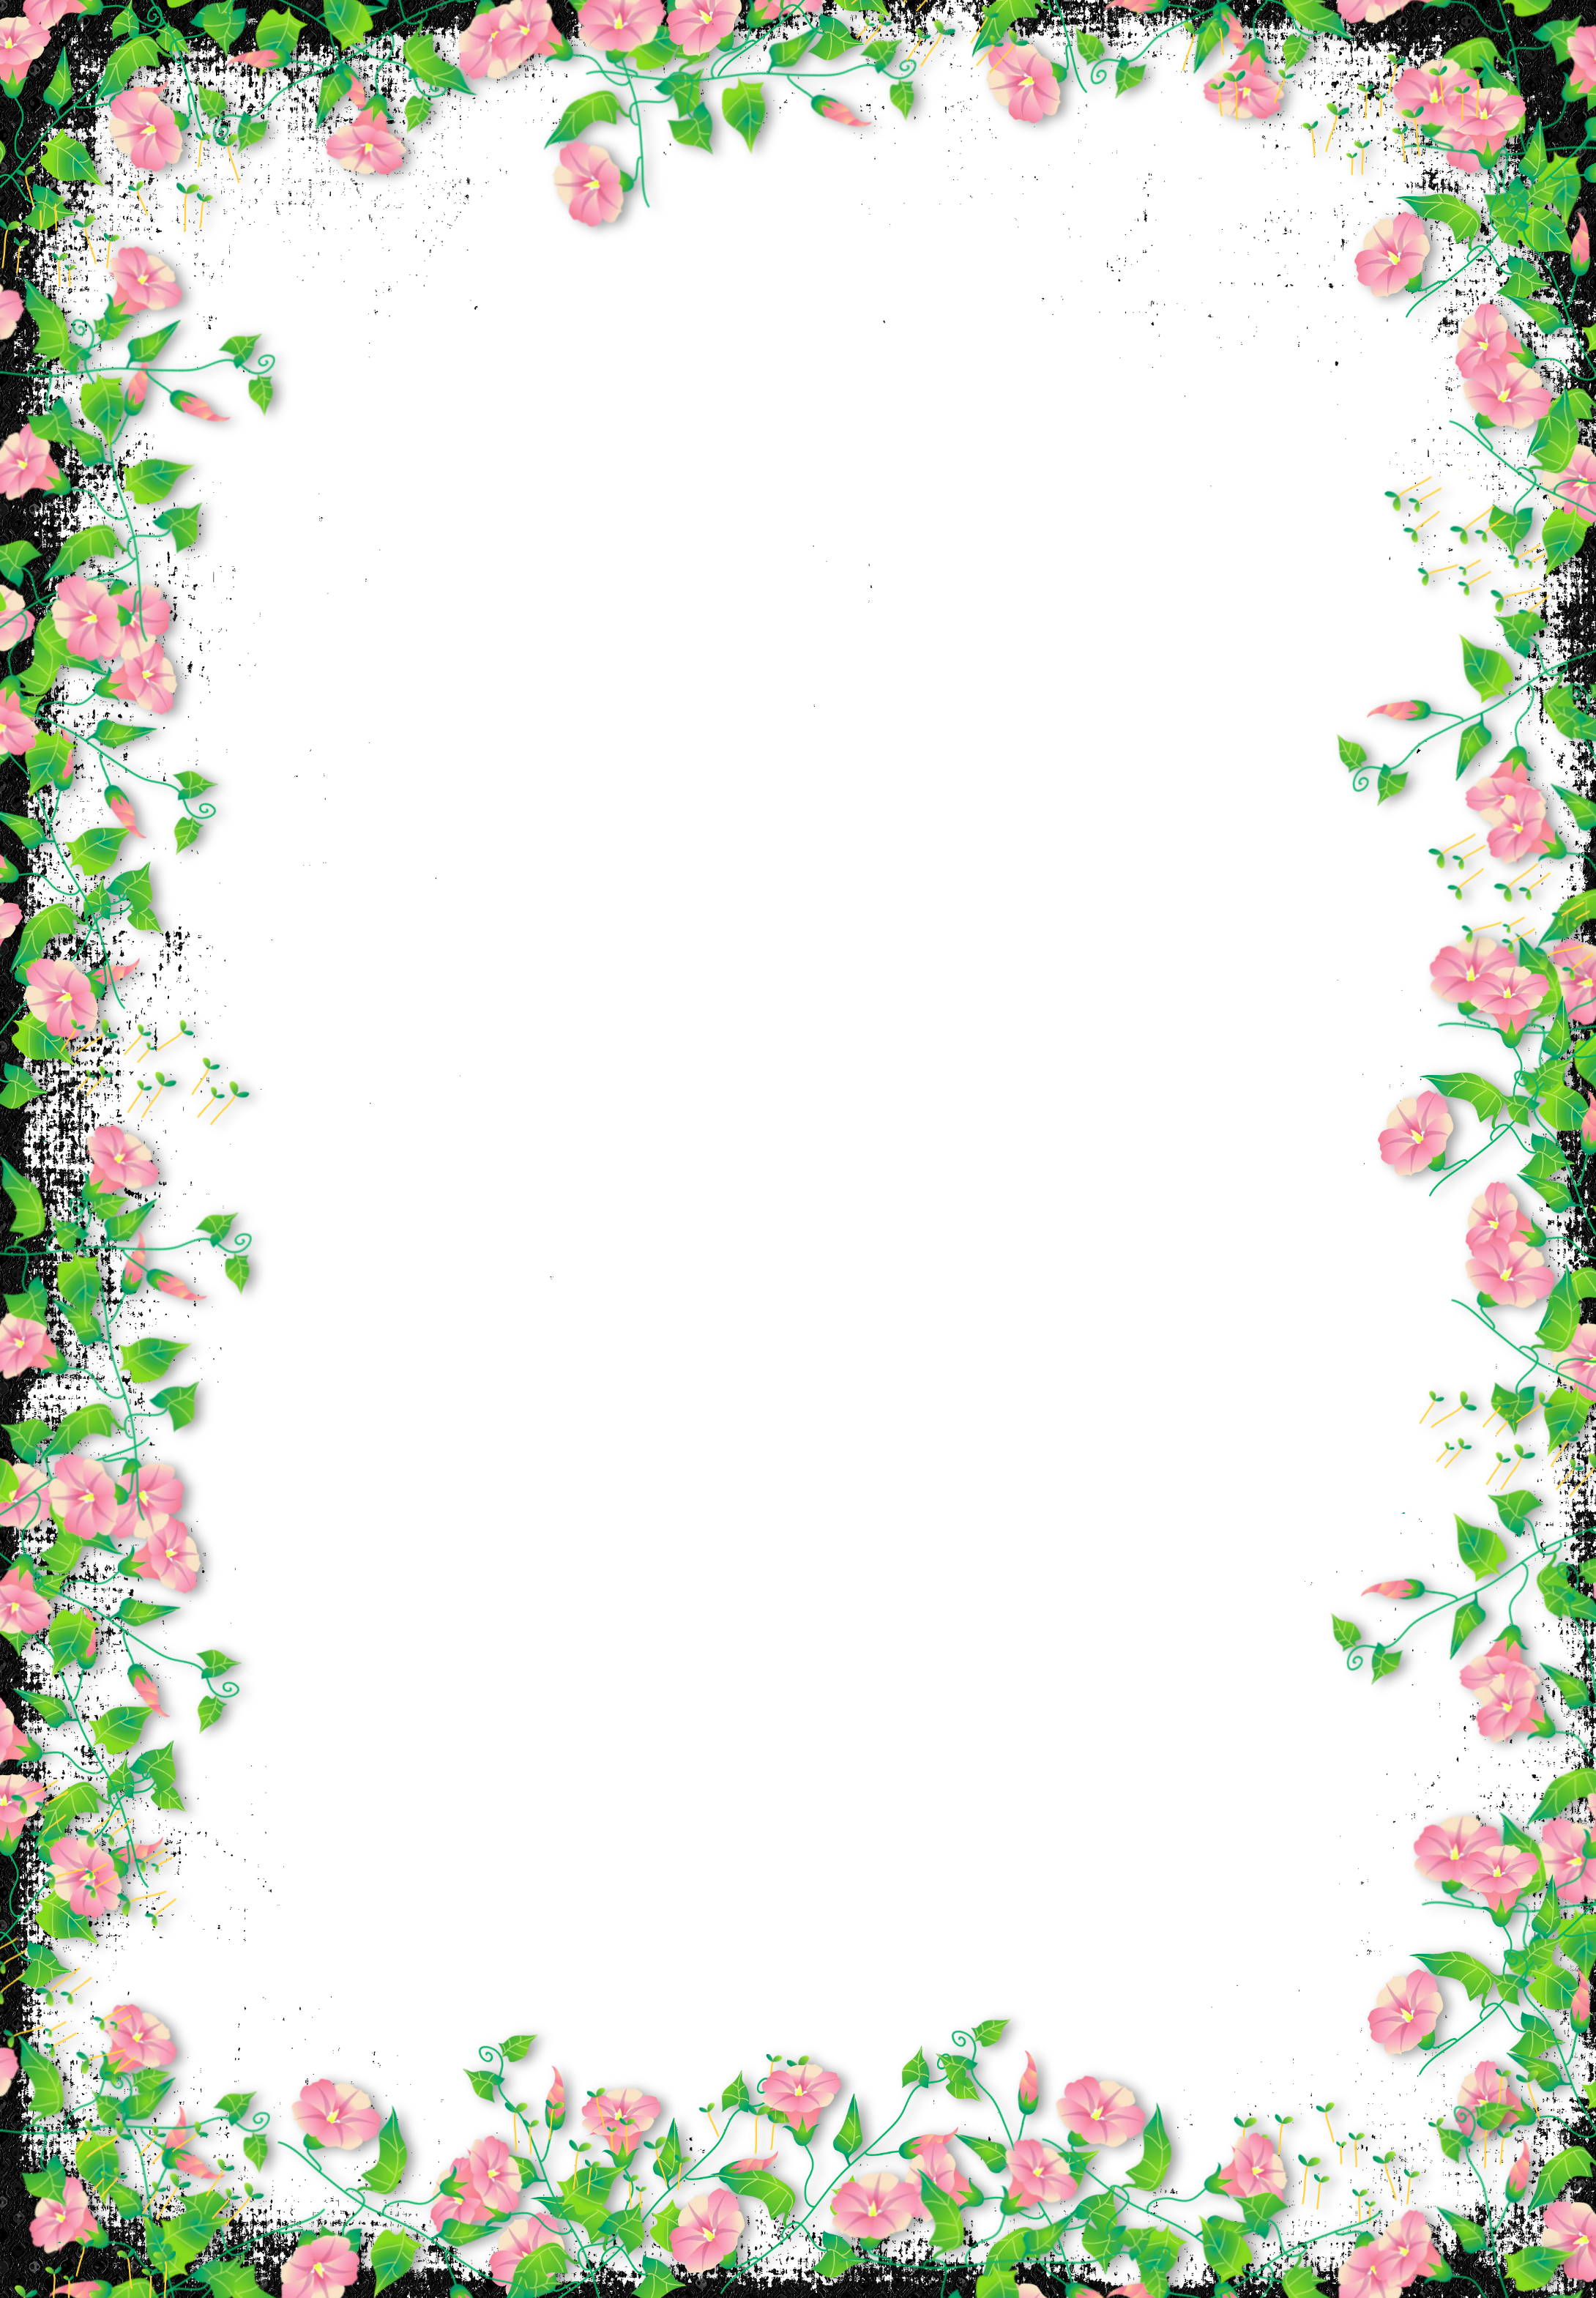 Download PNG image - Clipart Flower Border Frame PNG 